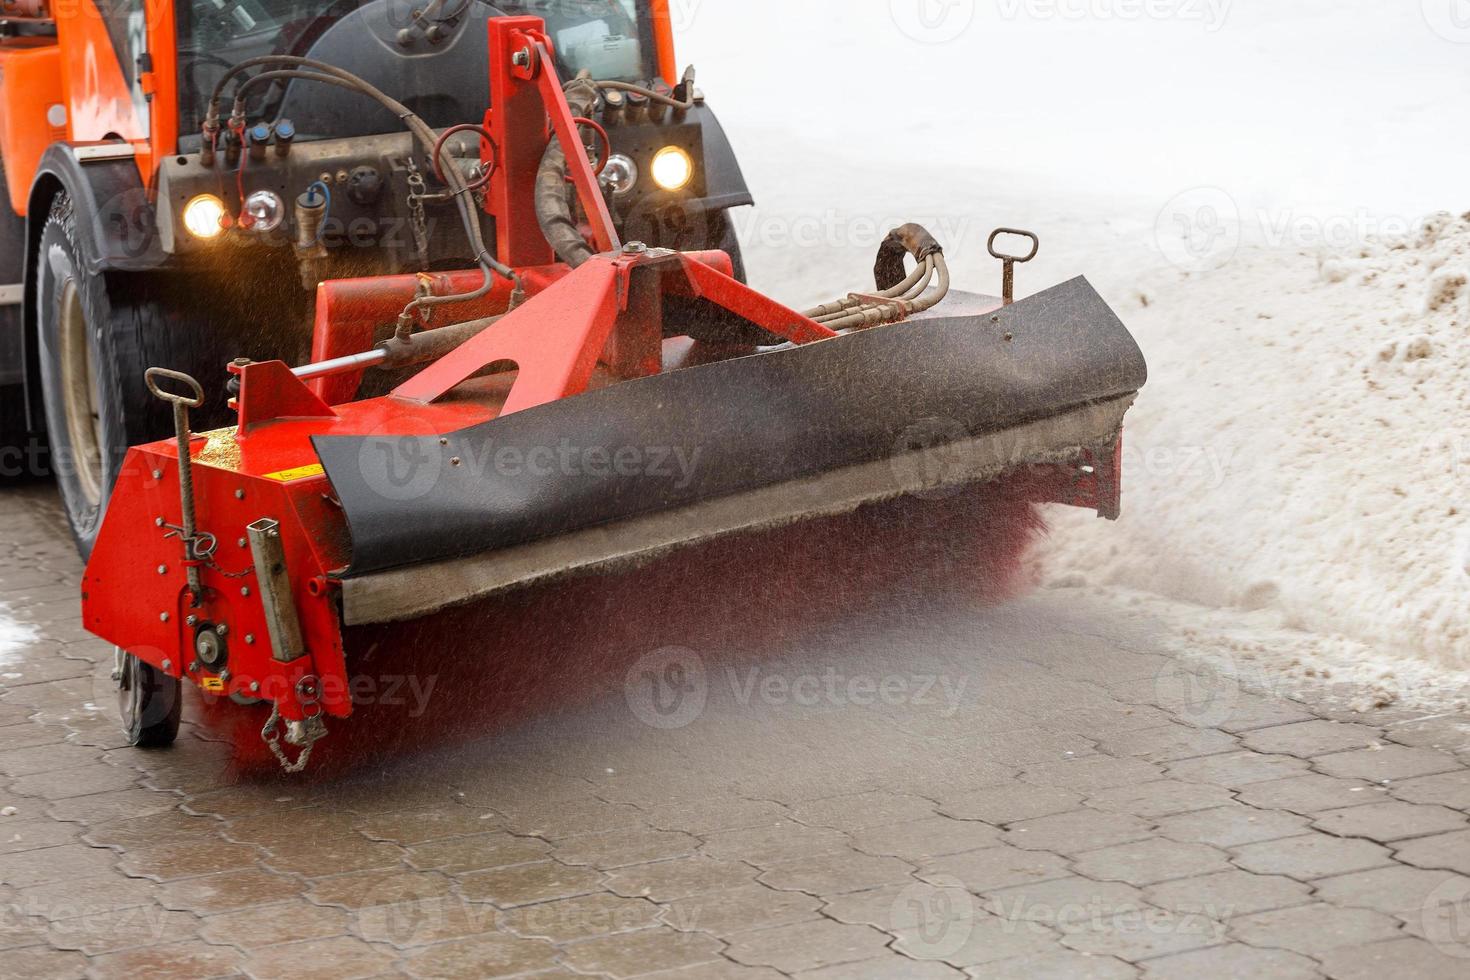 nettoyage de la neige. tracteur de déneigement enlevant la neige de la chaussée avec une brosse ronde spéciale, photo